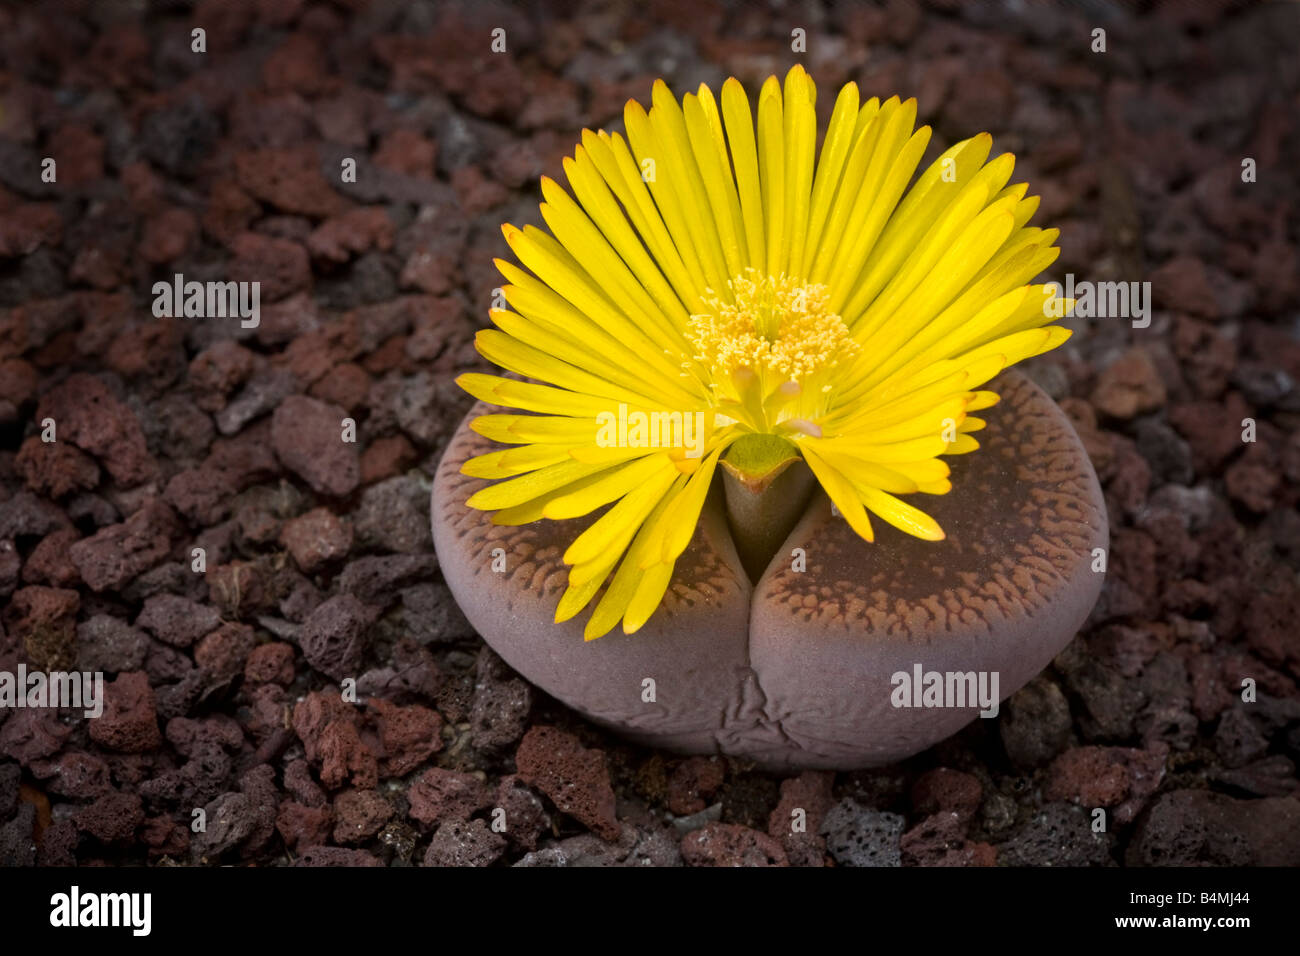 A Flowering stone (Lithops aucampiae). Plante caillou (Lithops aucampiae) en fleur. Stock Photo